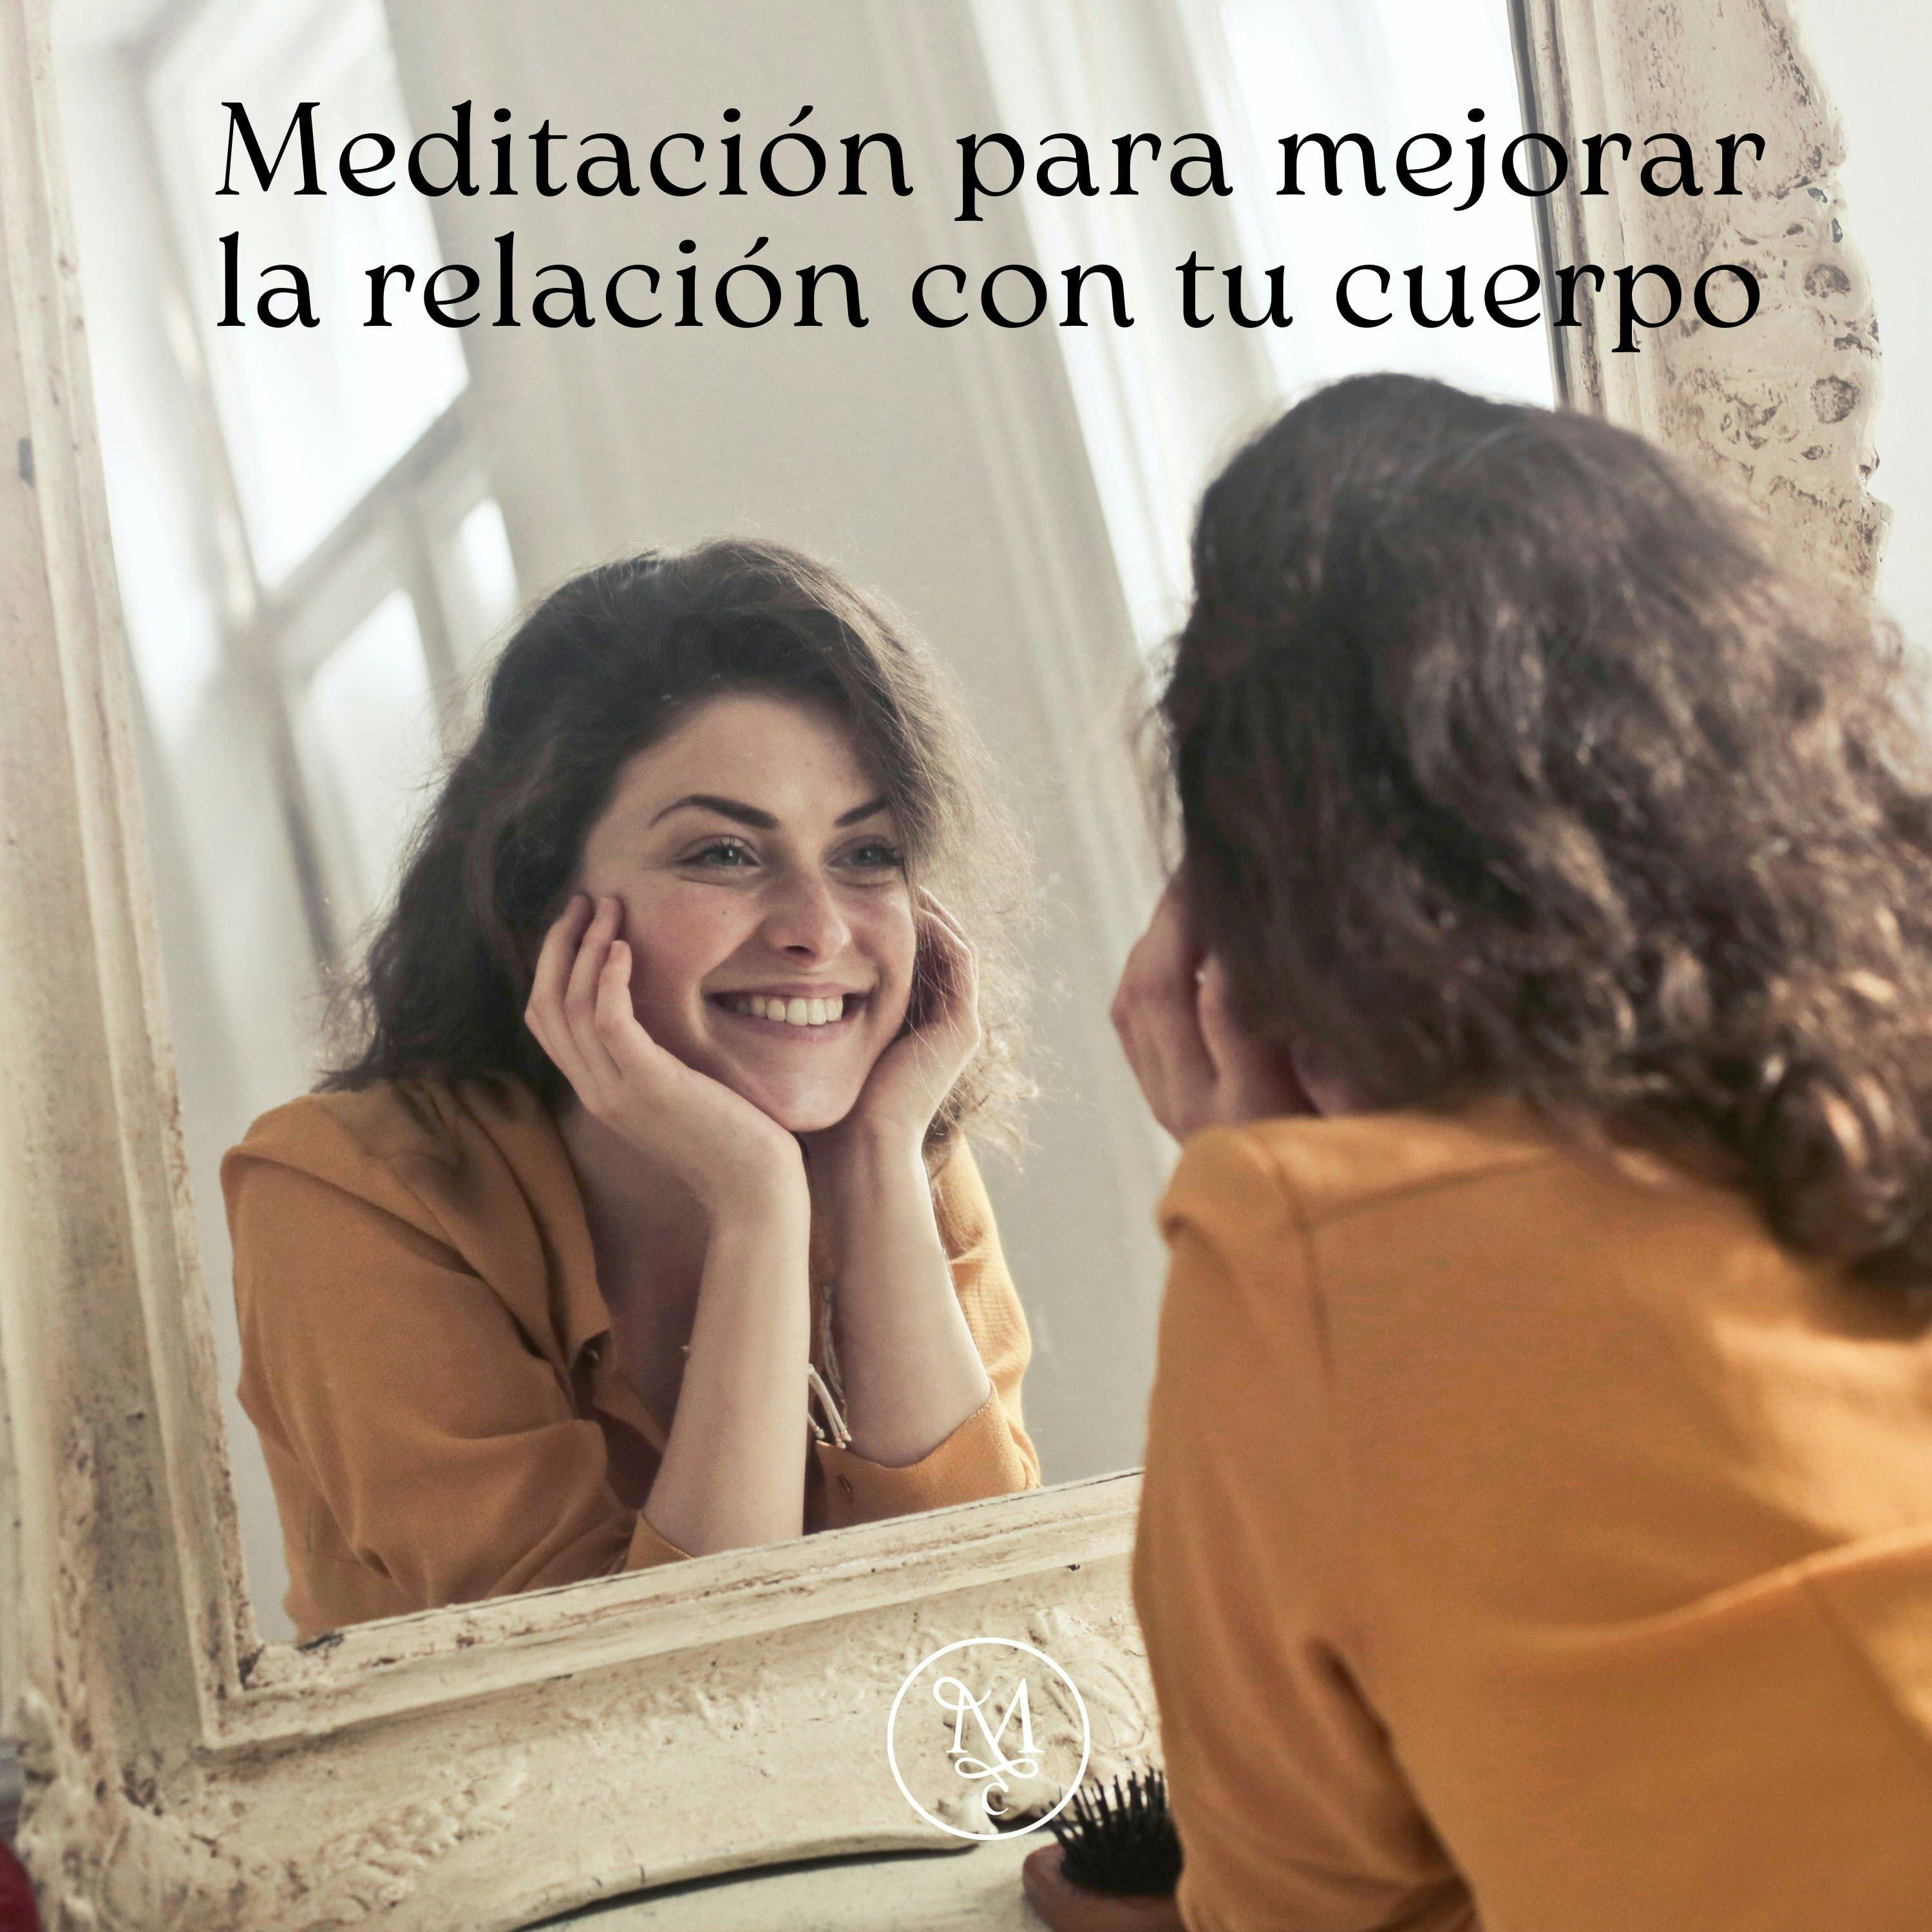 Meditación para mejorar la relación con tu cuerpo 💞🫰👩‍🦰 | 10 min | Encuentra tu paz interior ✨